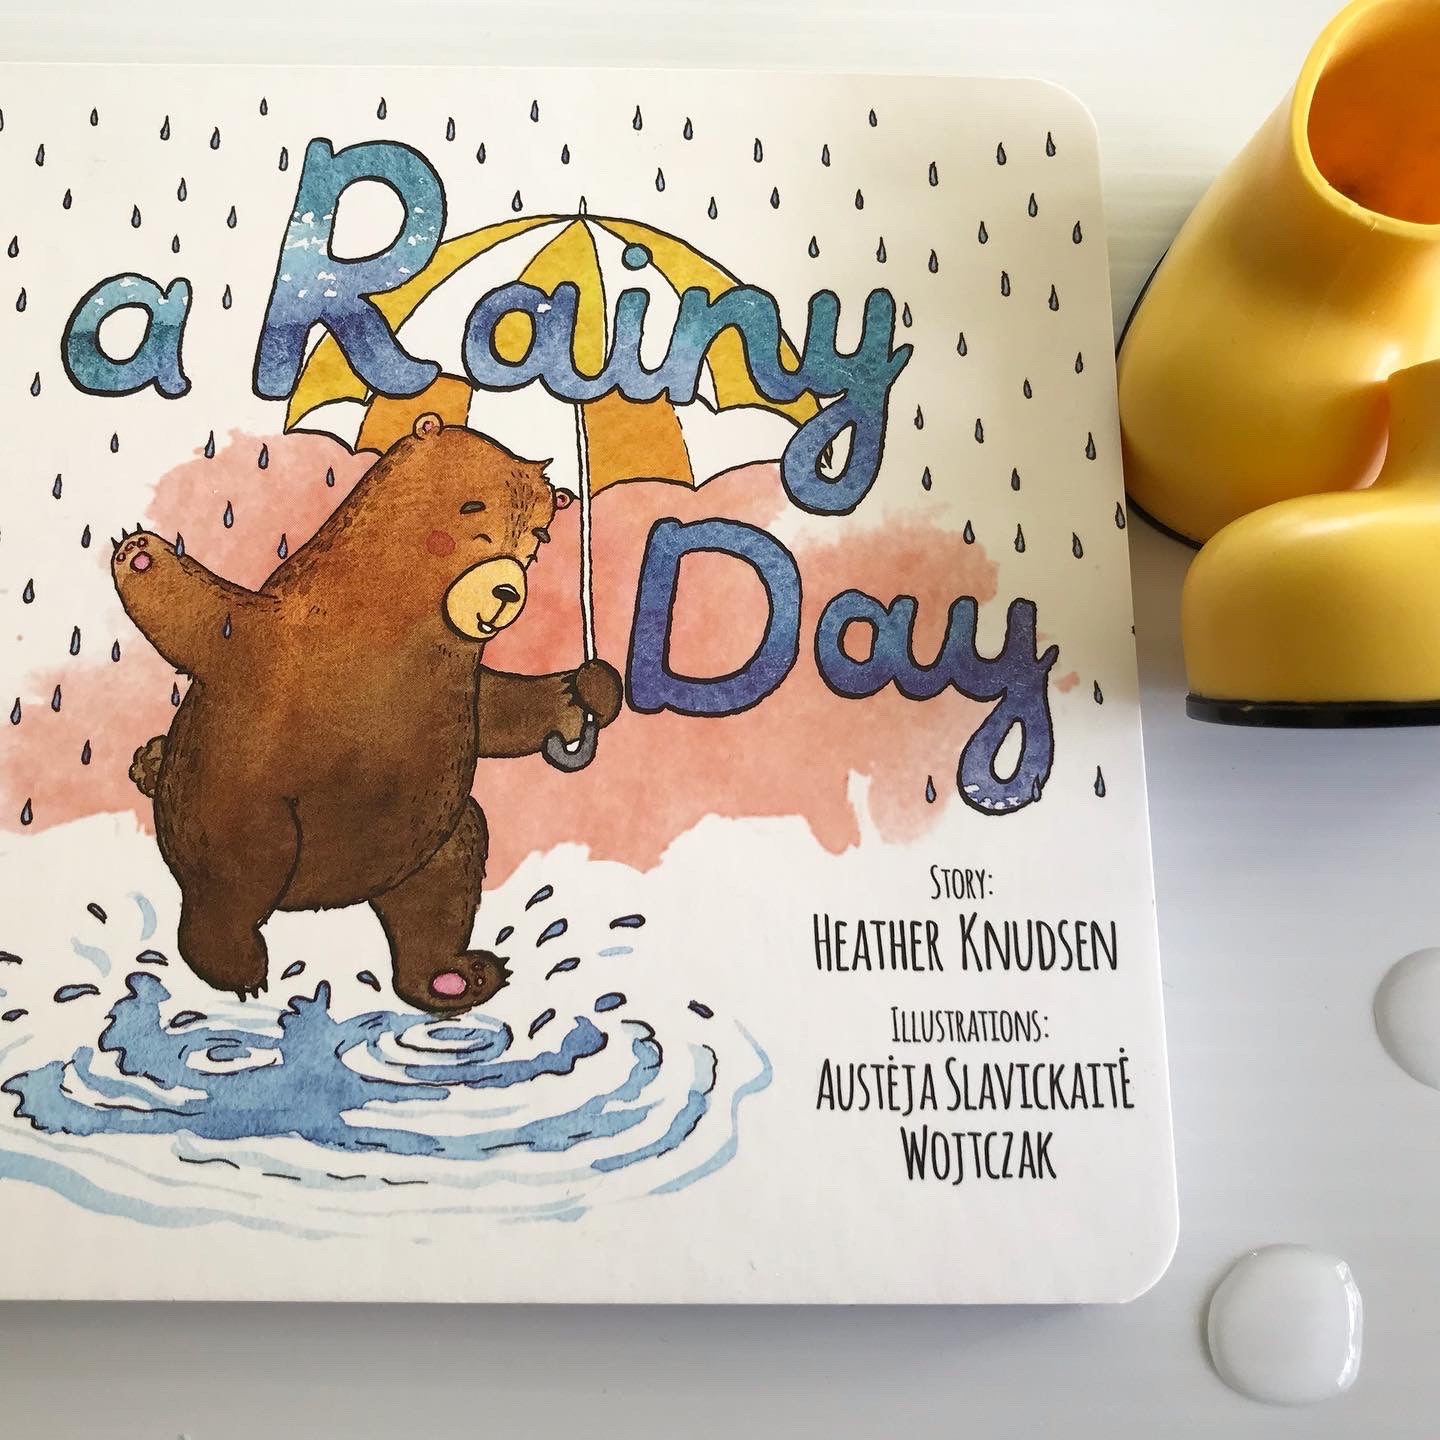 The Best Children's Rain Books